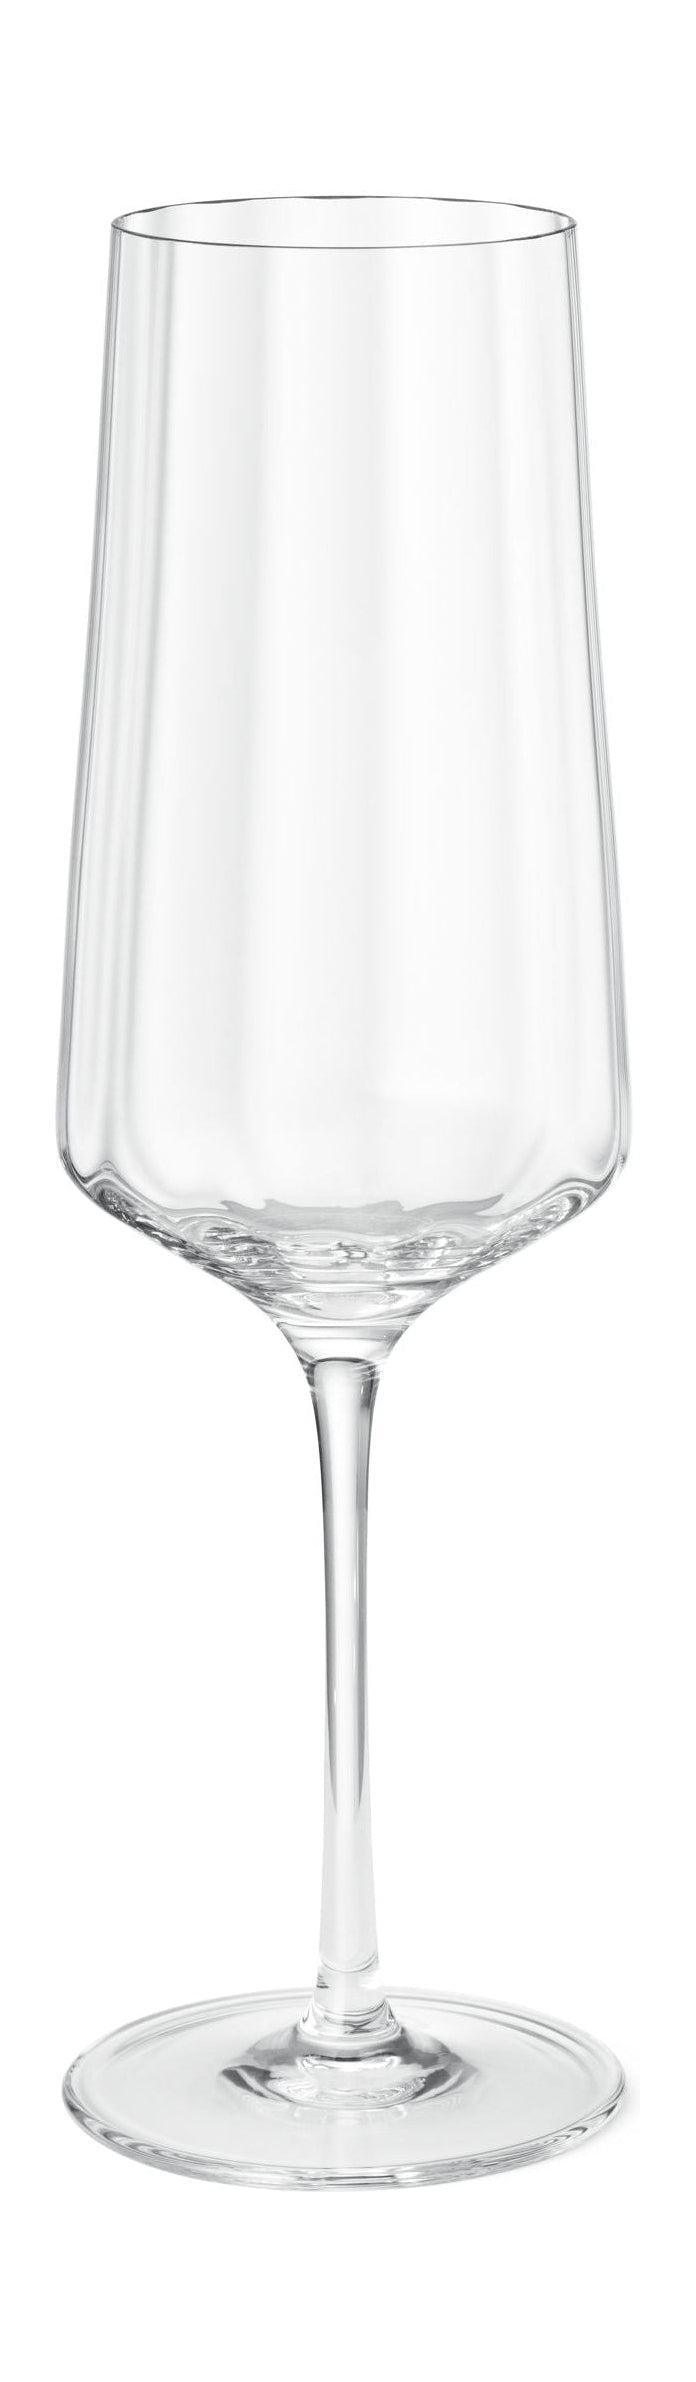 Georg Jensen Bernadotte Champagne Glass 27 Cl 6 Pcs.